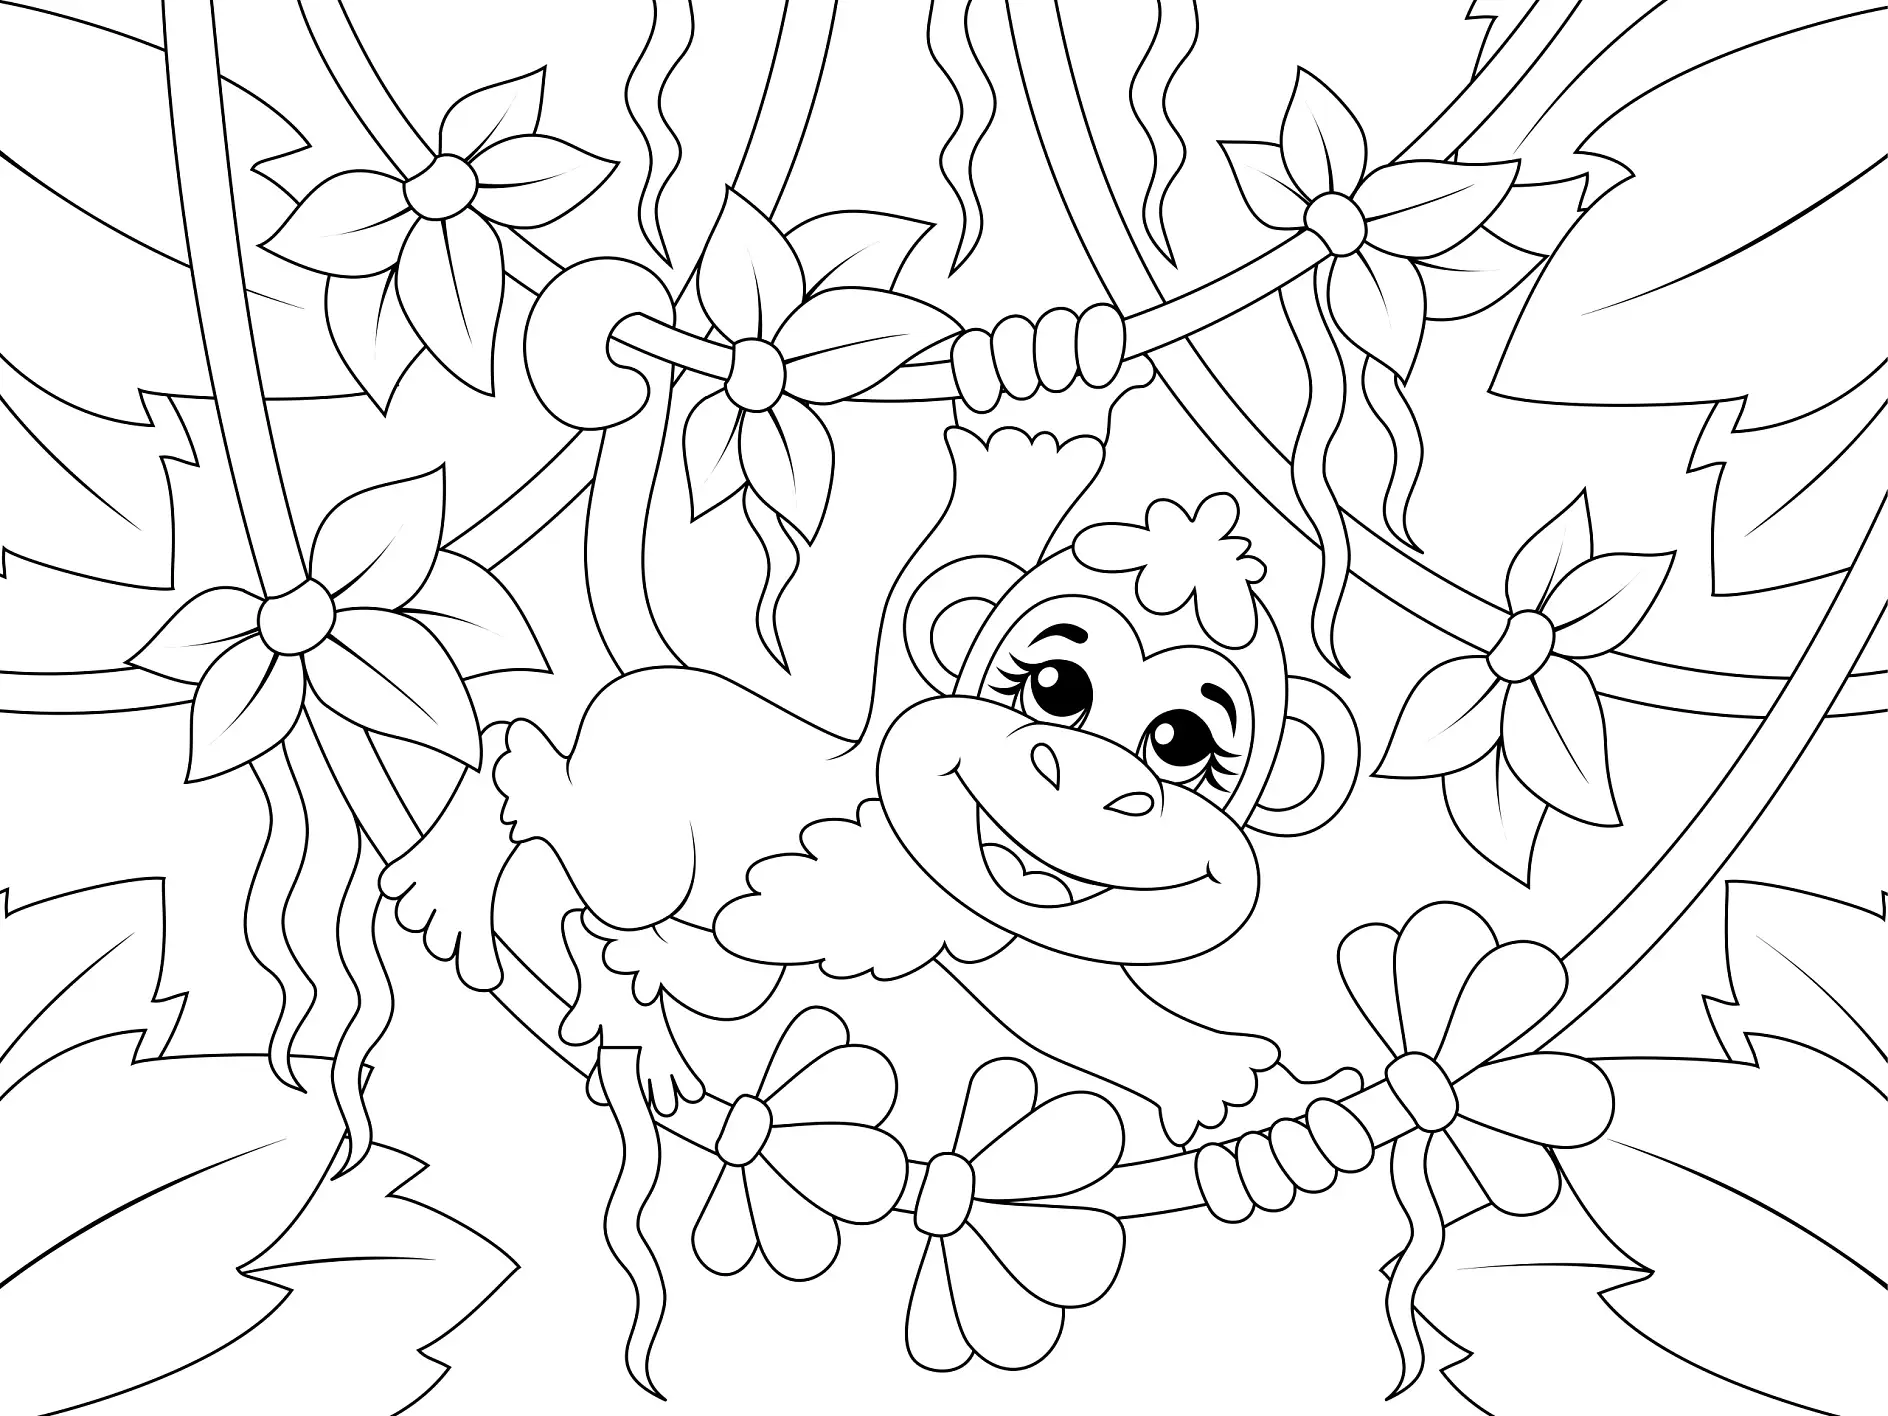 Ausmalbild Affe klettert an Lianen durch den Dschungel voller Blumen